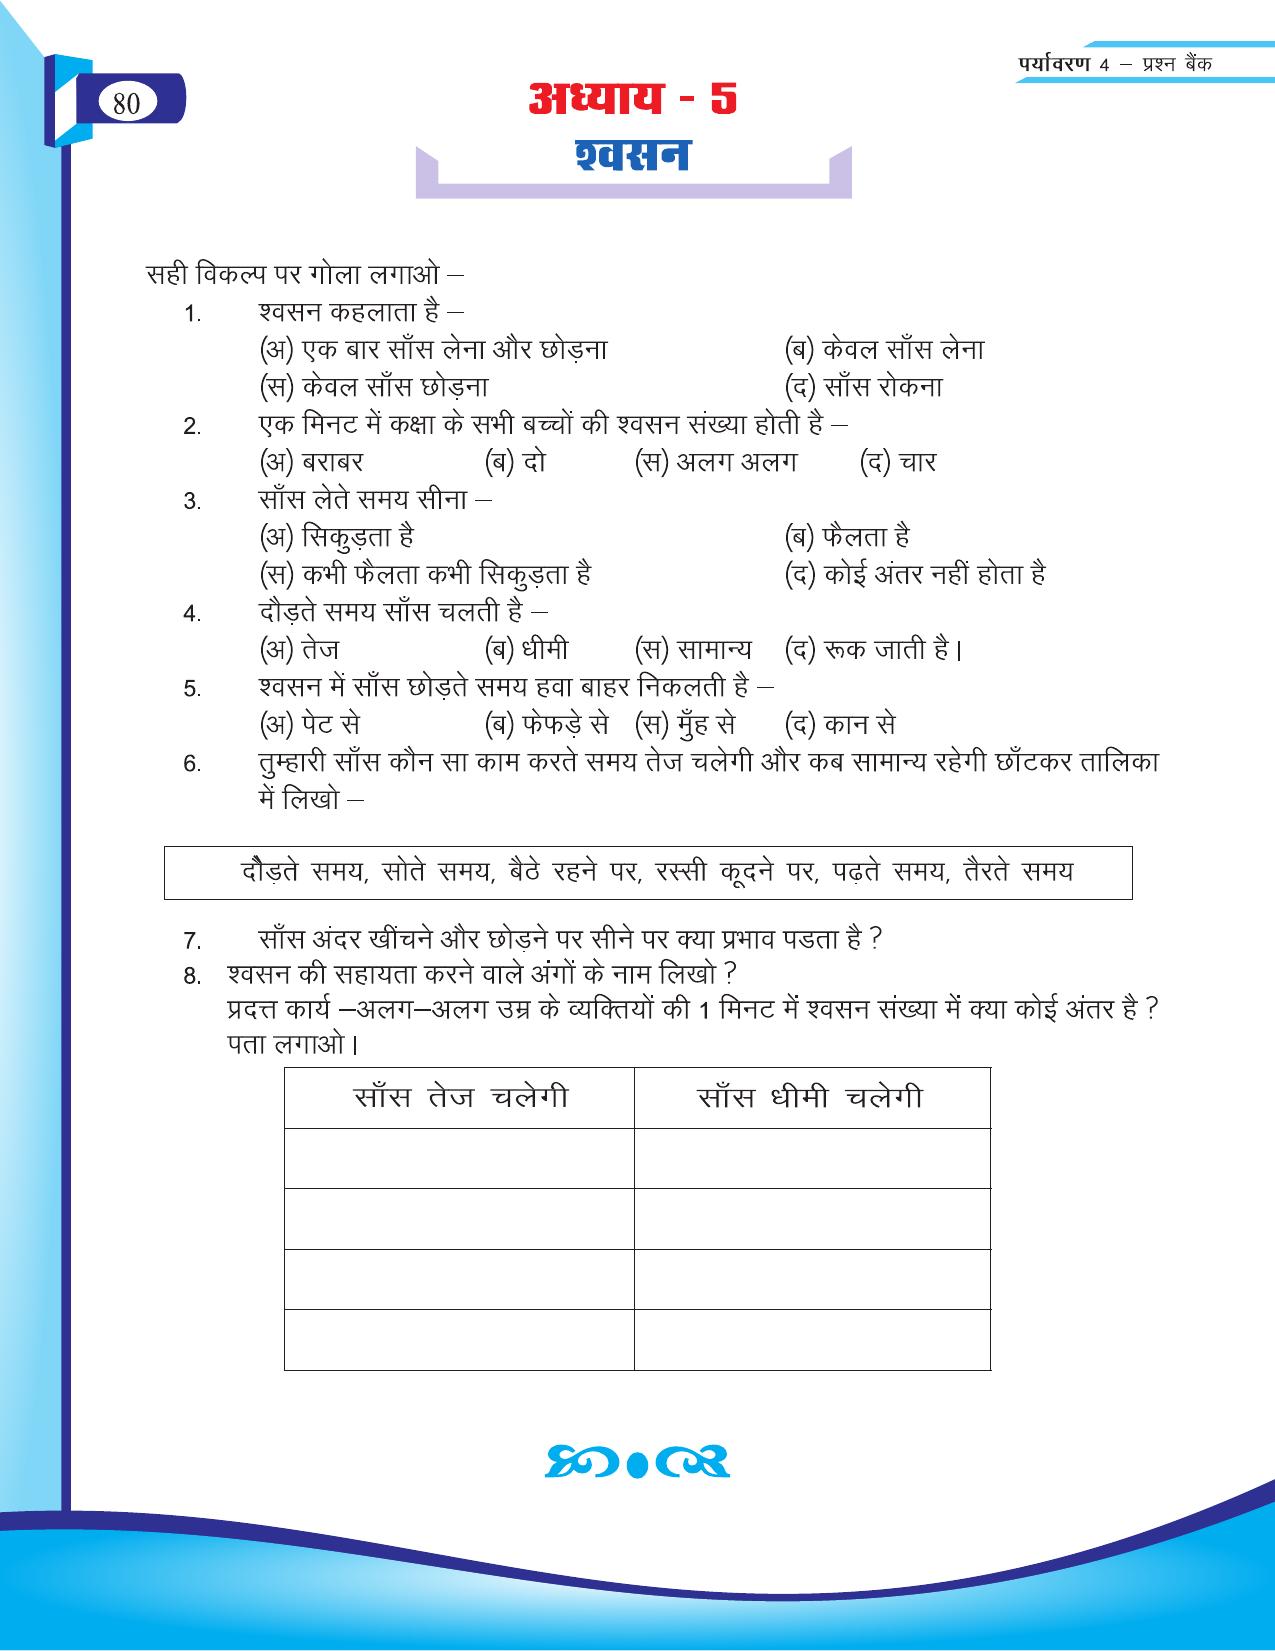 Chhattisgarh Board Class 4 EVS Question Bank 2015-16 - Page 9